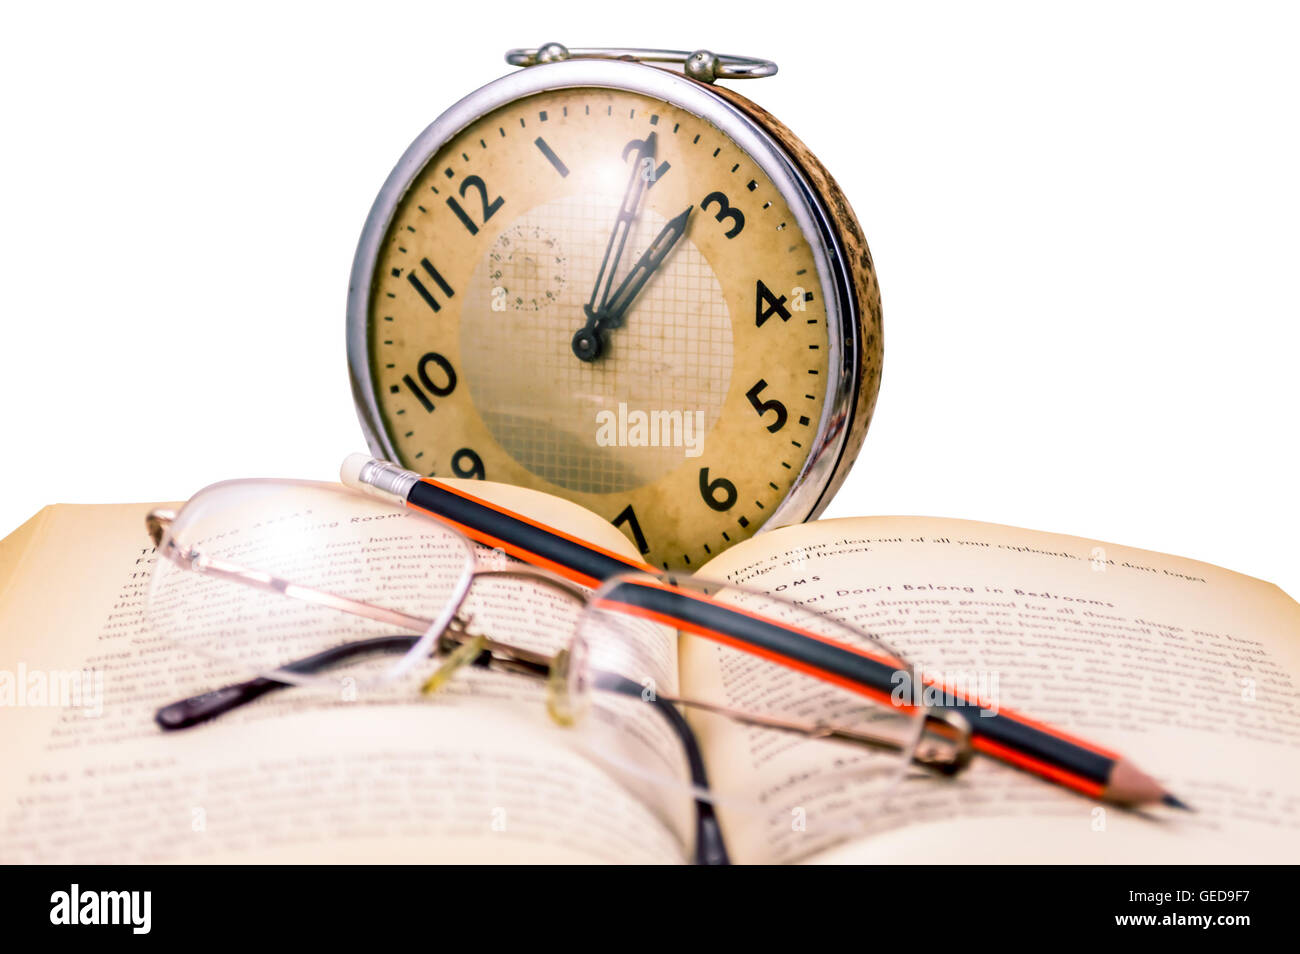 Buchen Sie Gläser, eine alte Uhr - Lesung im Alter Bleistift. Stockfoto